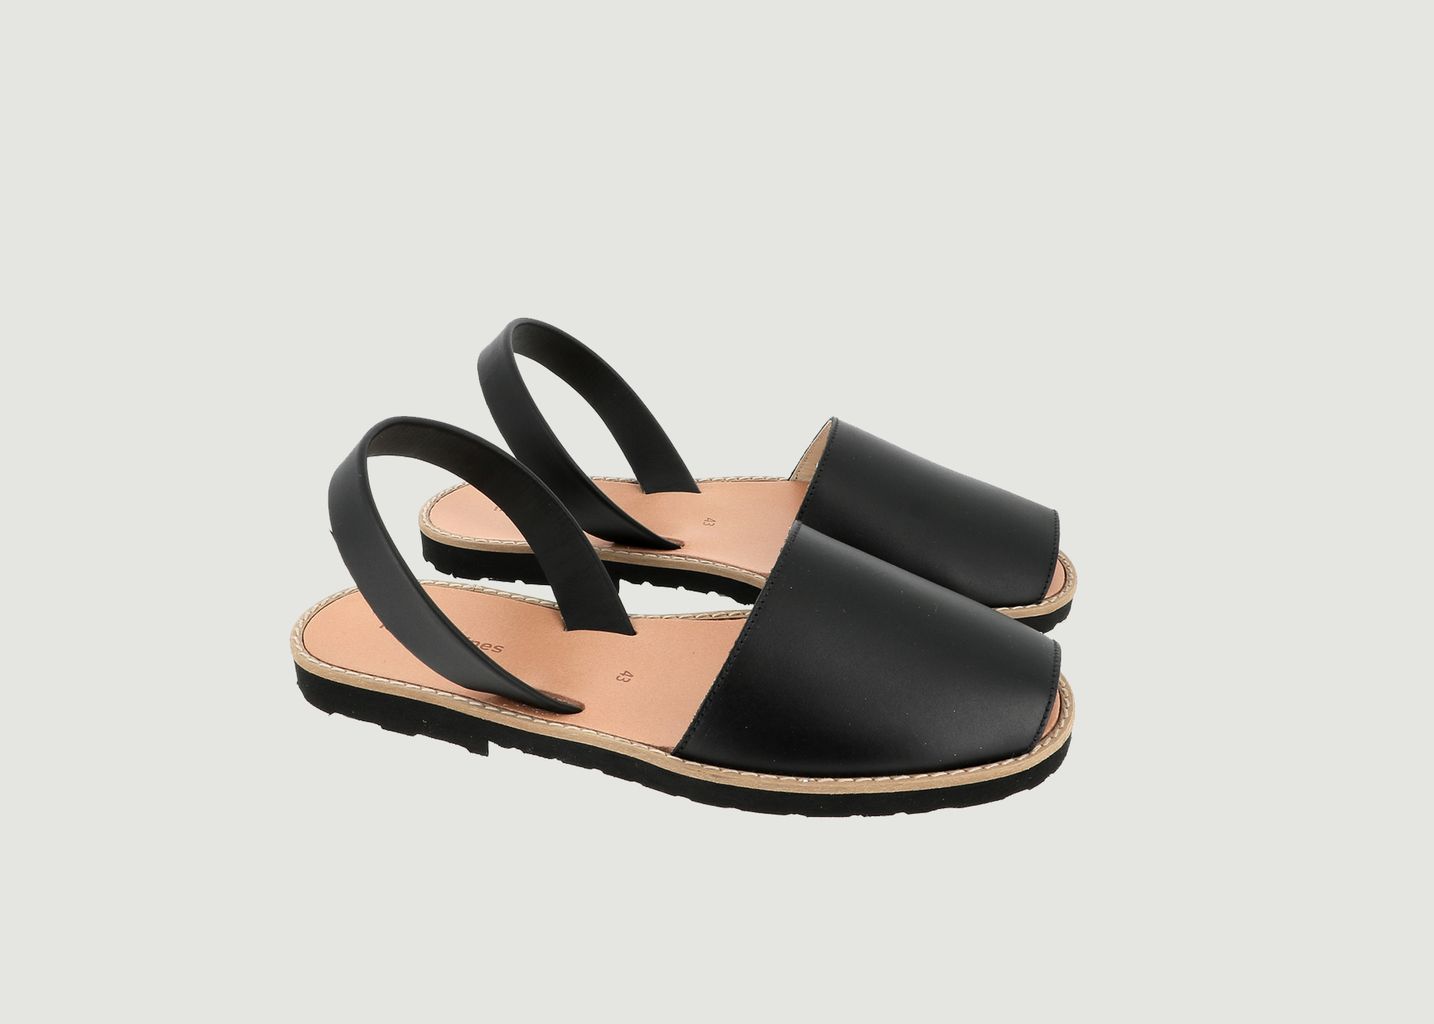 Avarca leather sandals - Minorquines